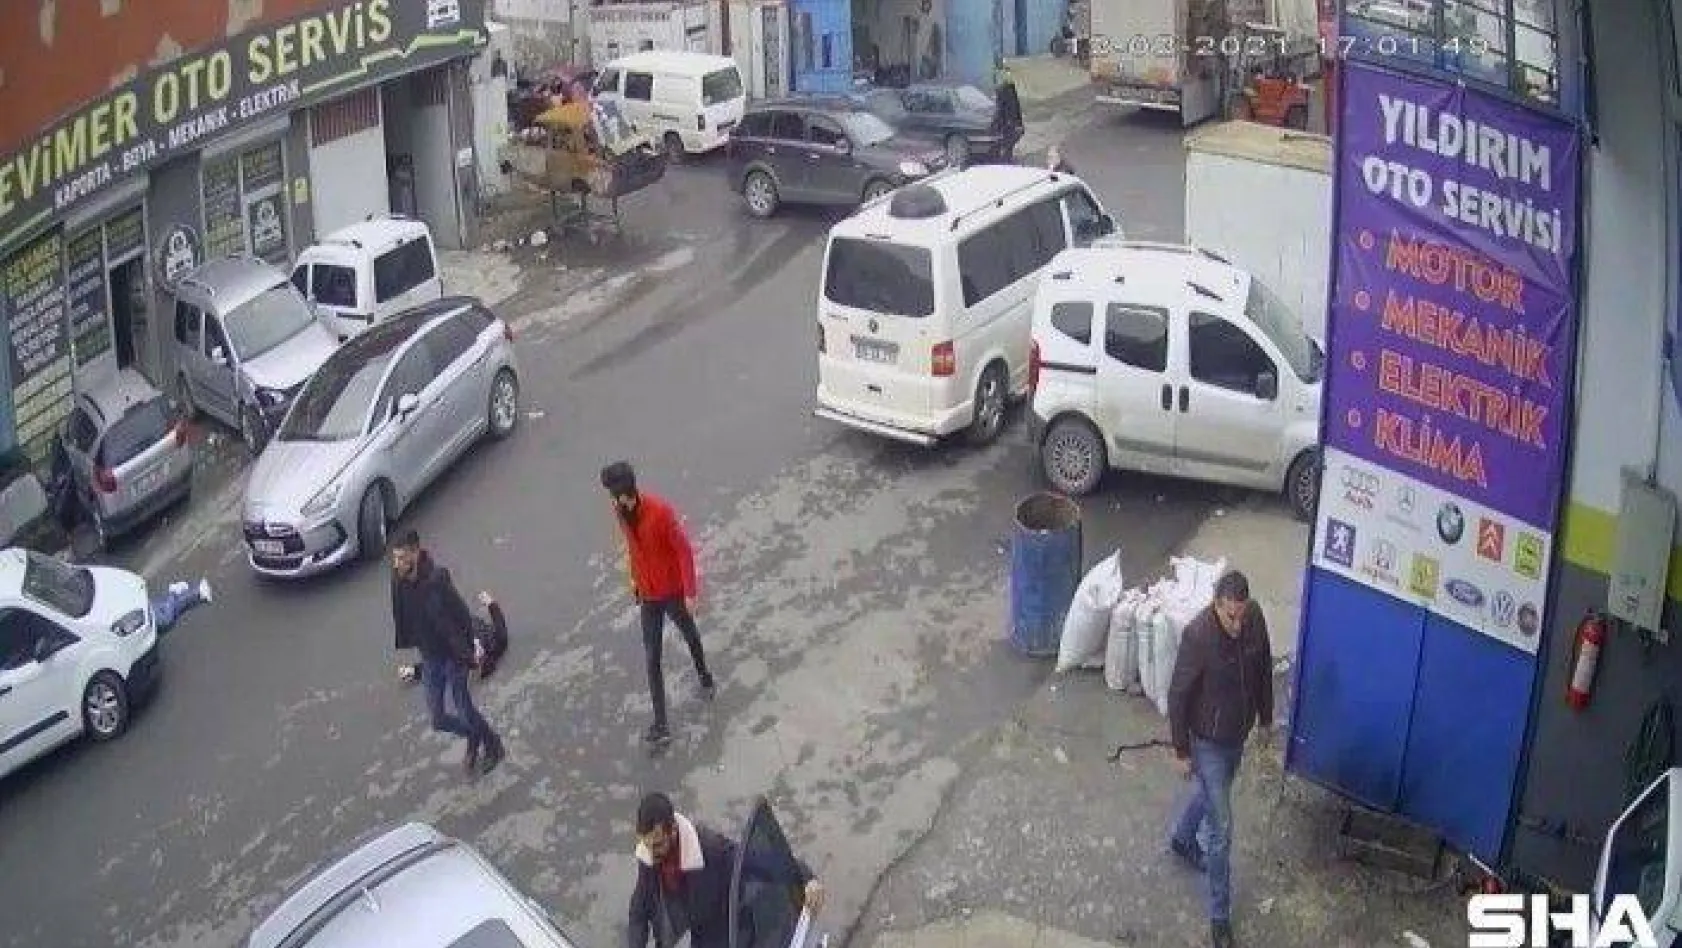 Sanayi sitesinde polisin vurulduğu olayın güvenlik kamera görüntüleri ortaya çıktı